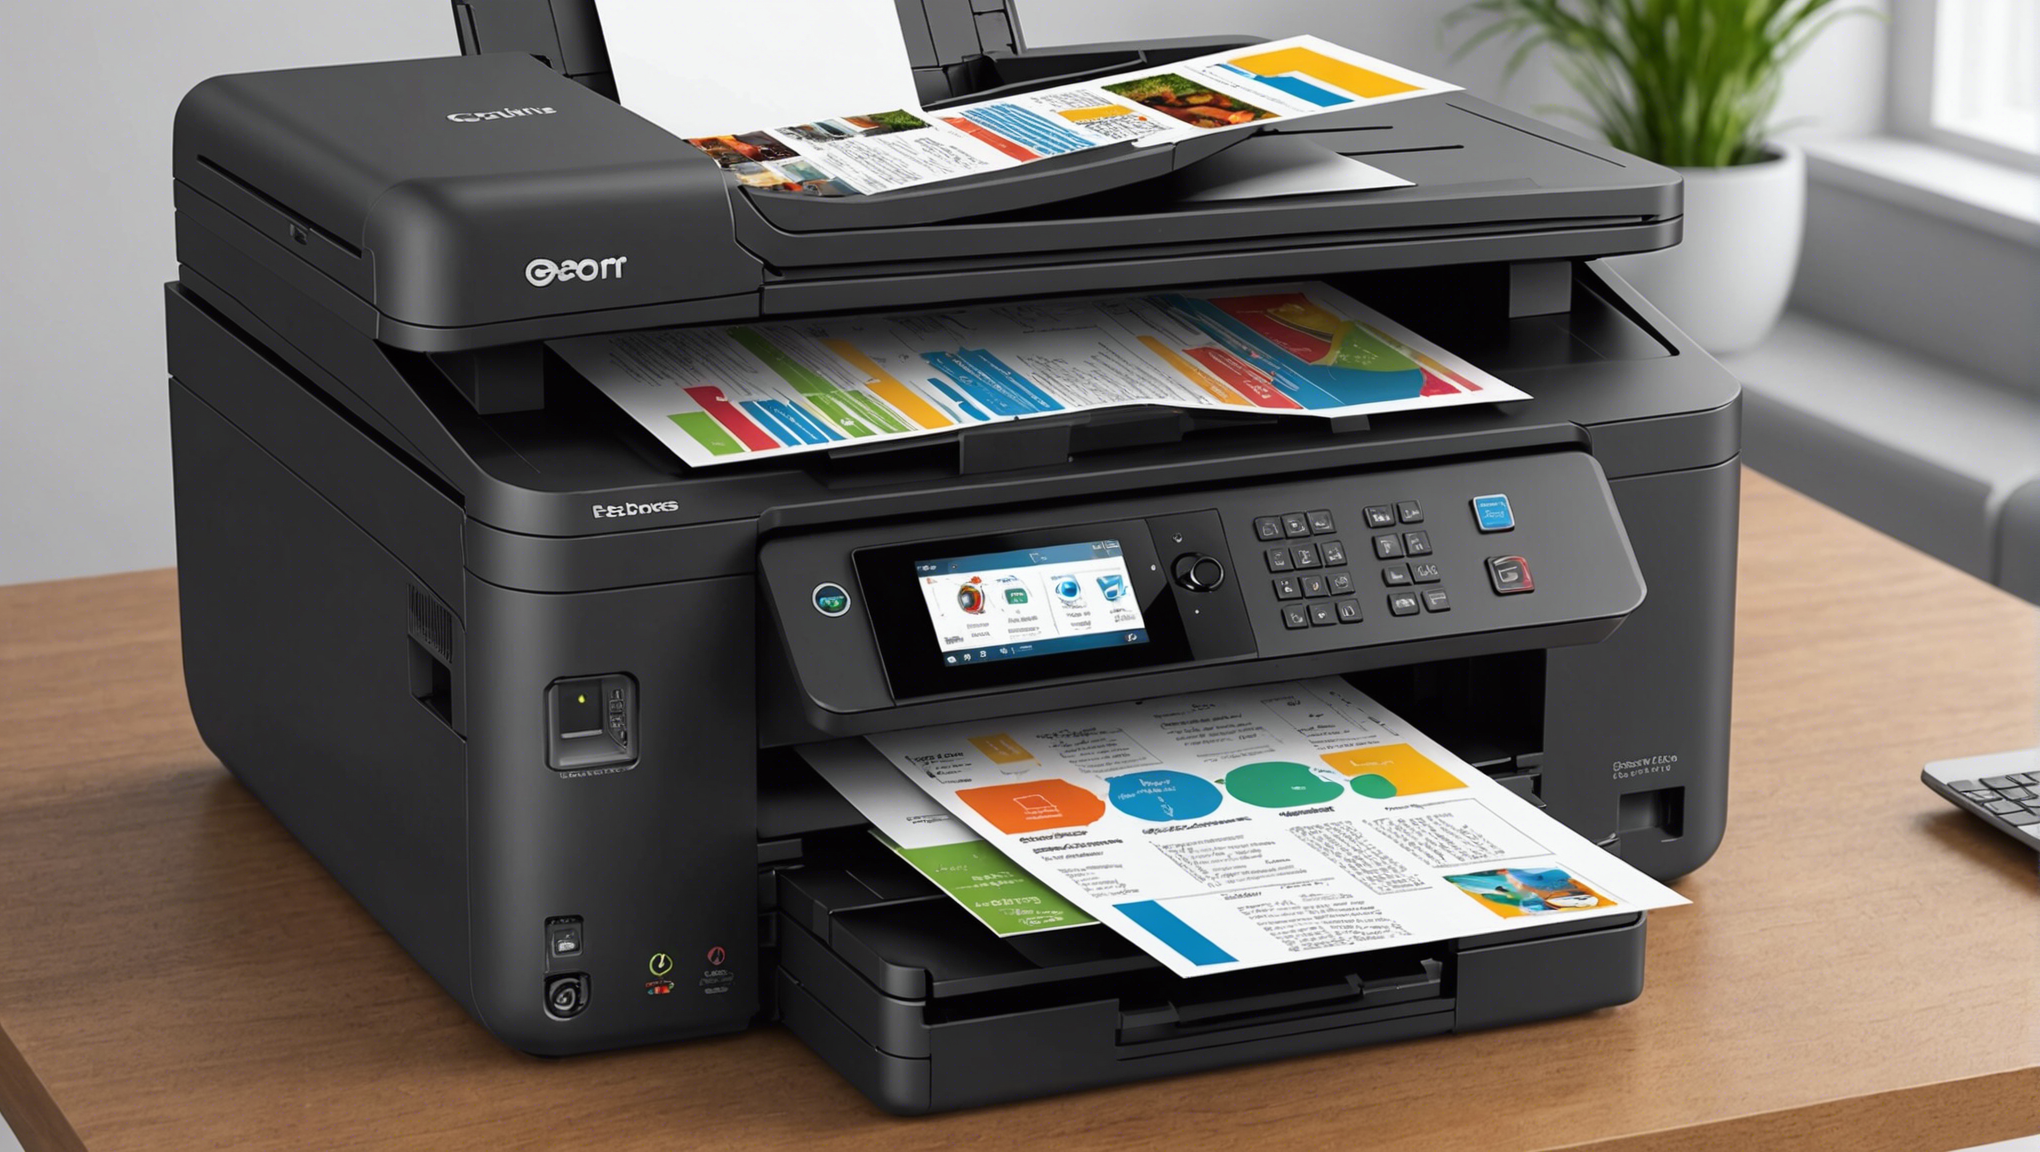 découvrez notre guide d'achat pour les imprimantes professionnelles à prix abordables, pour des solutions d'impression performantes et économiques.